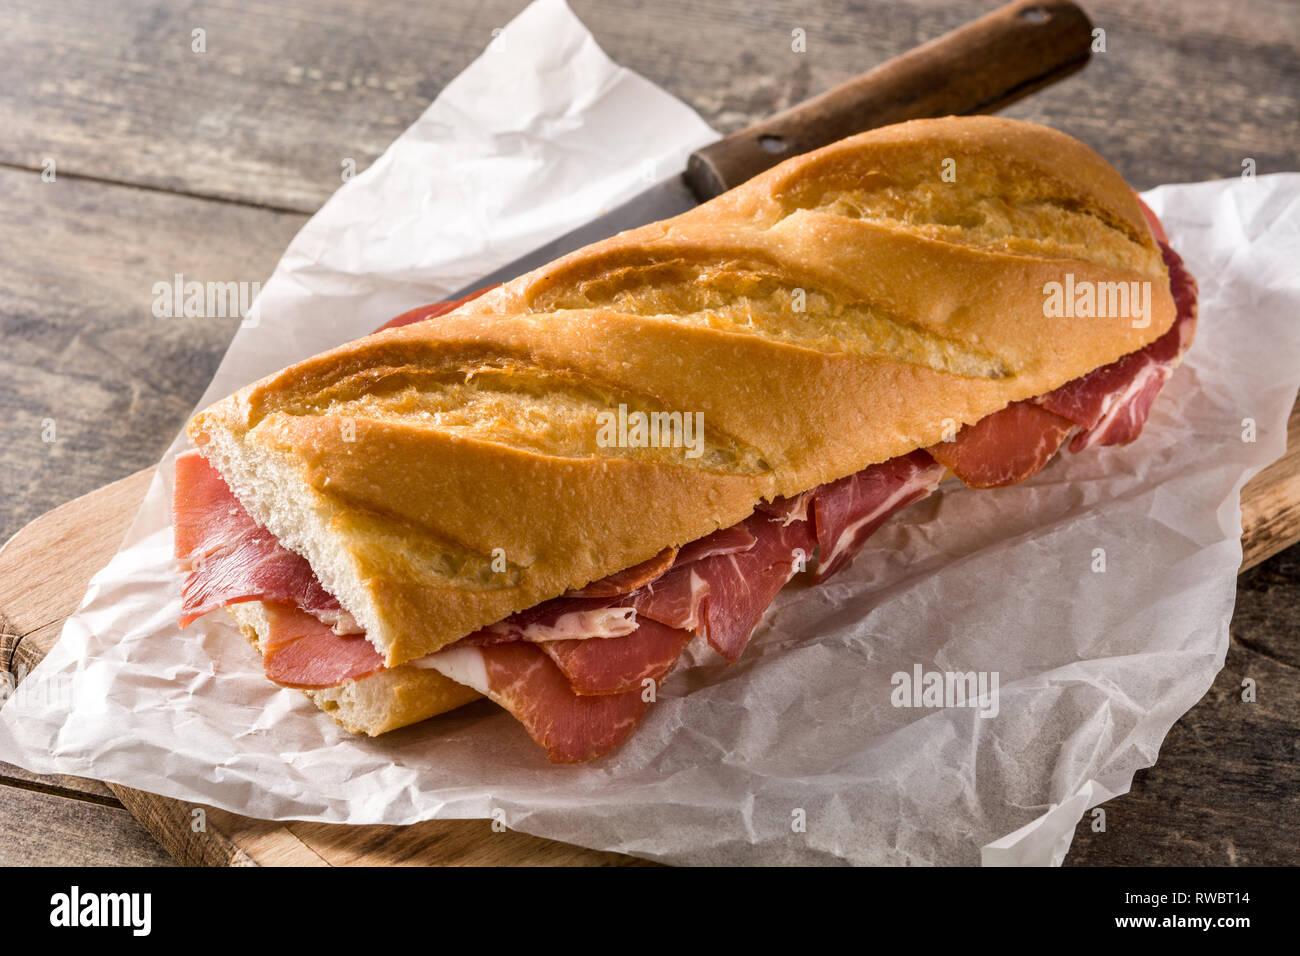 Sandwich au jambon serrano espagnol sur table en bois. Banque D'Images